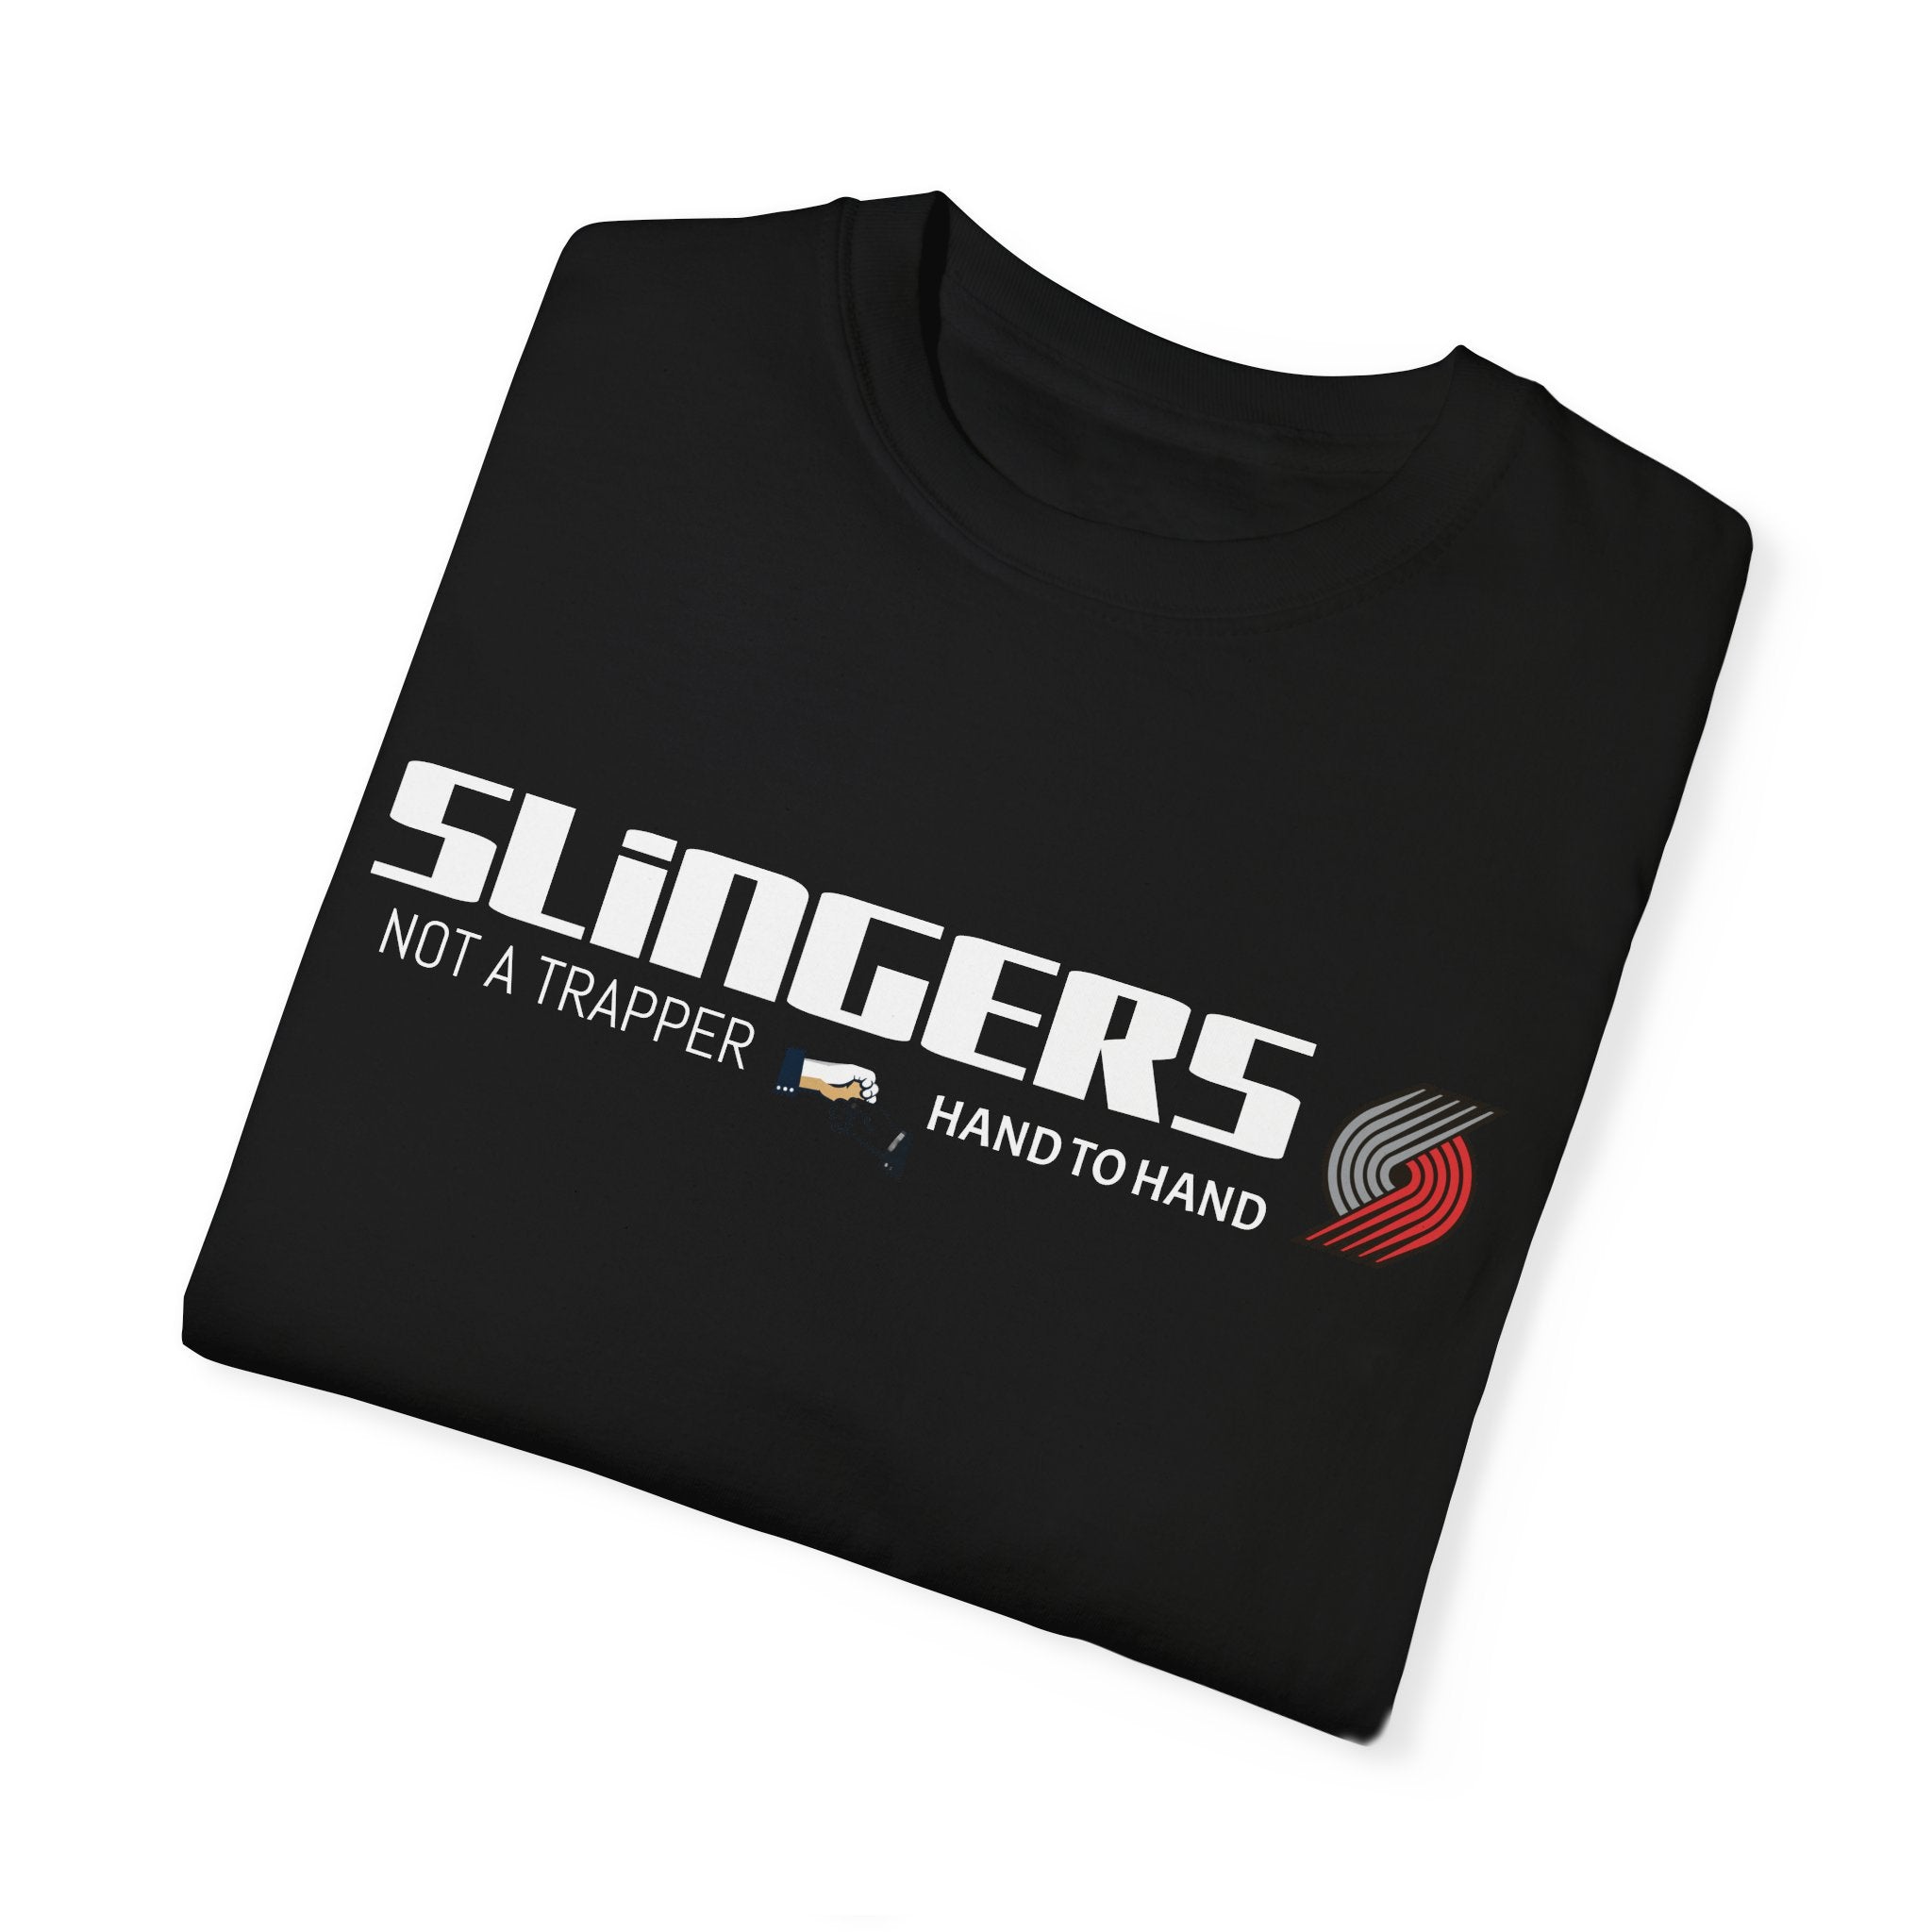 SLINGERS Unisex Garment-Dyed T-shirt